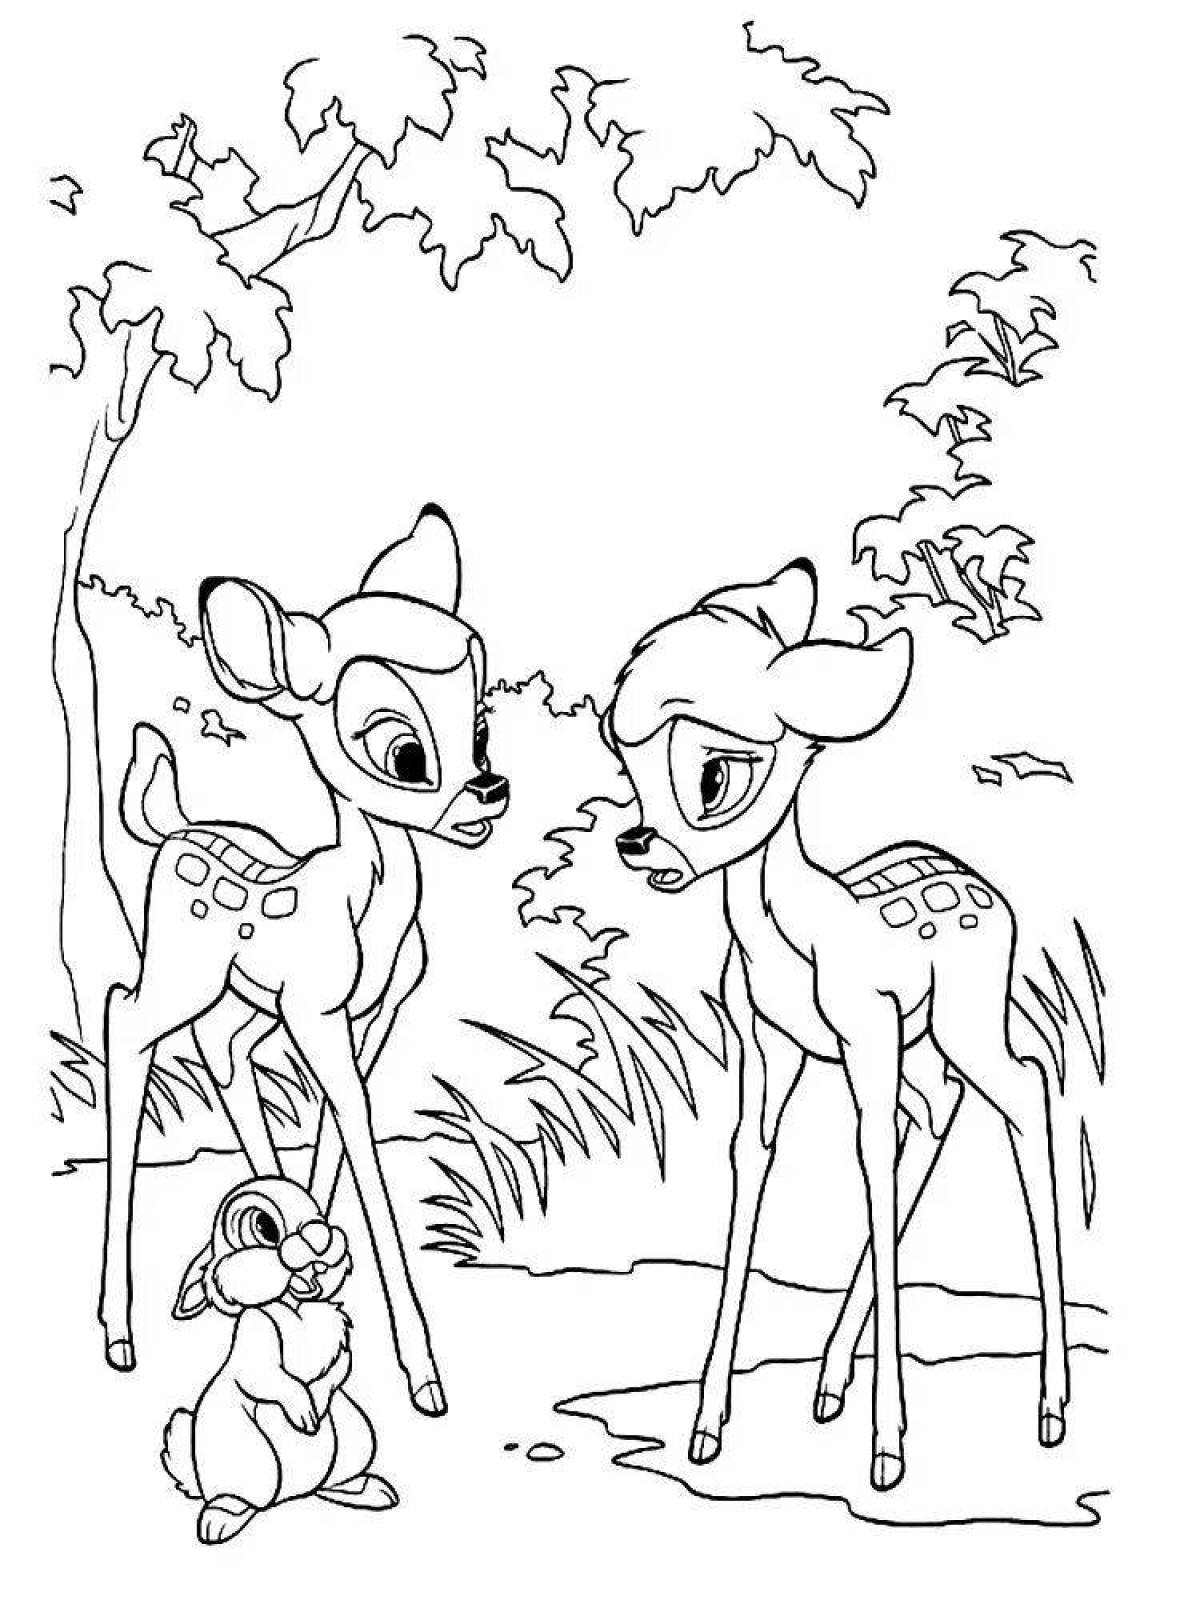 Magic deer coloring book for kids